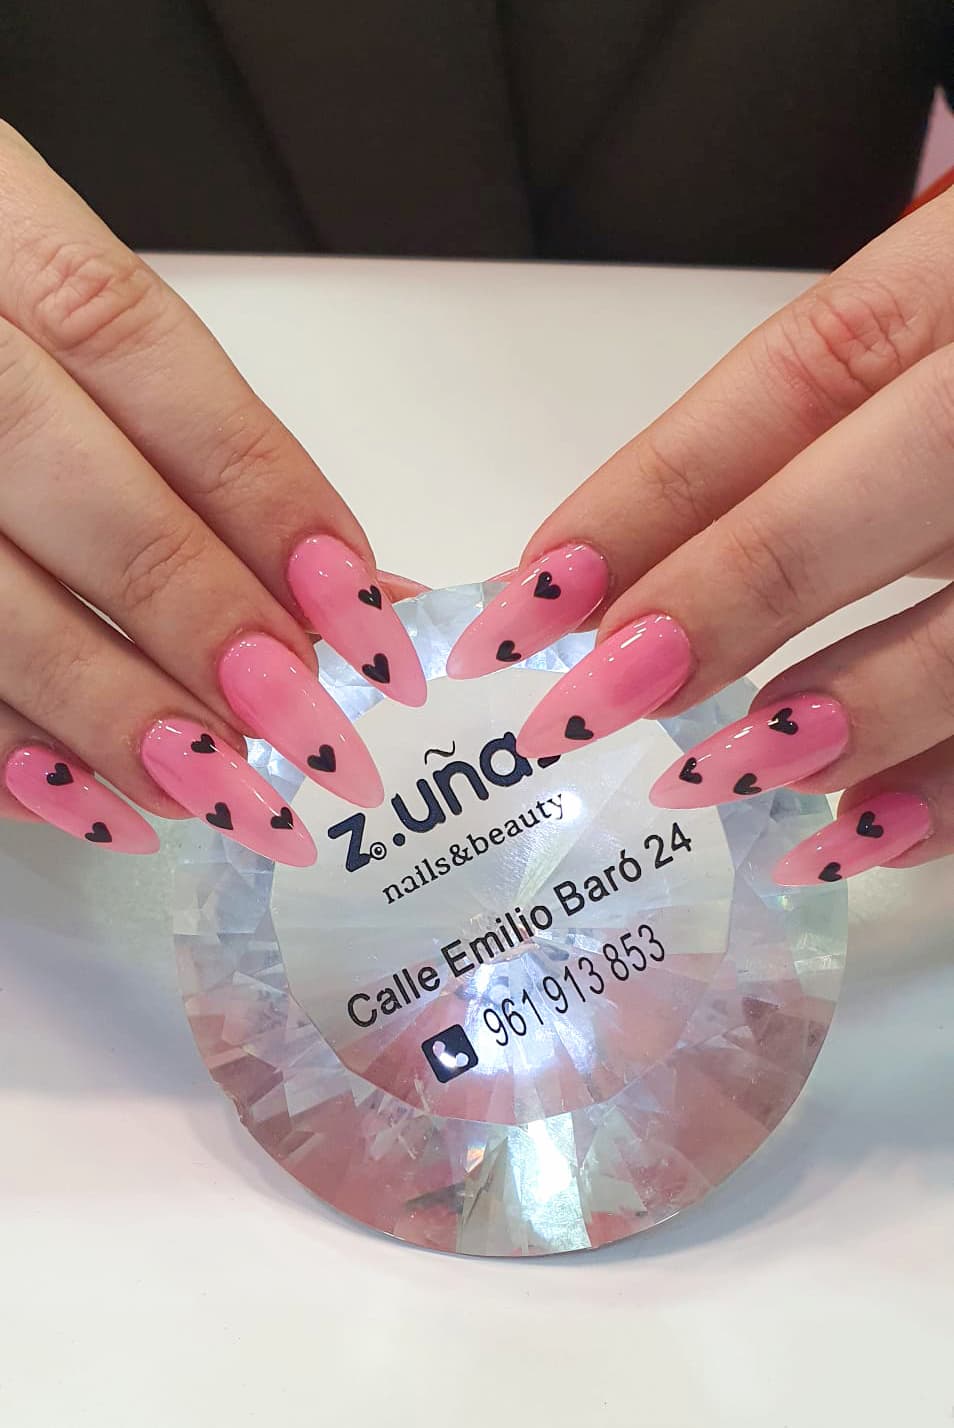 Celebra el mes más romántico en tus uñas con Z uñas